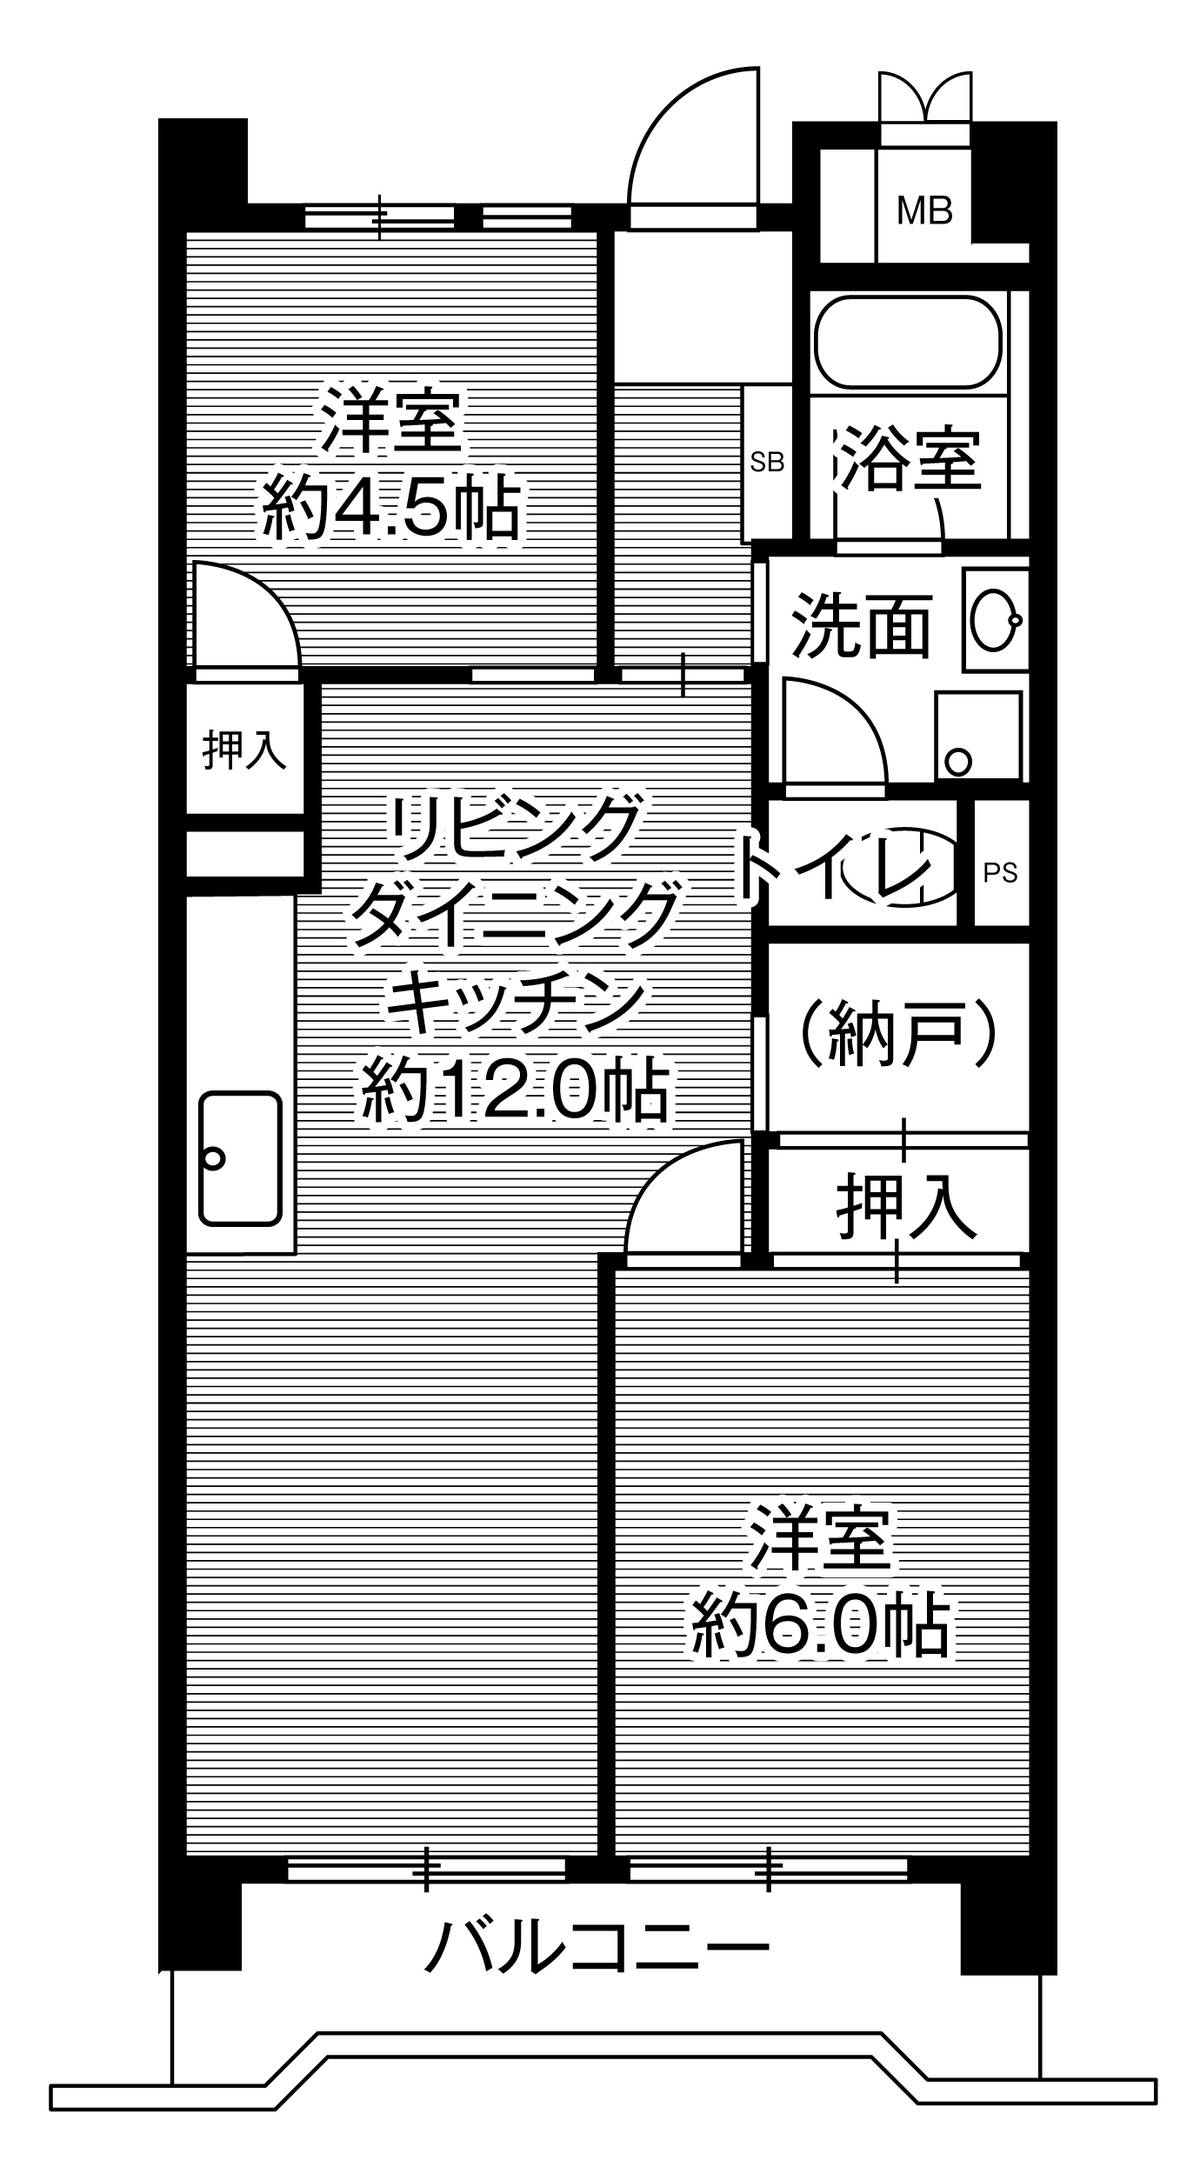 Sơ đồ phòng 2LDK của Village House Minatojima Tower ở Chuo-ku